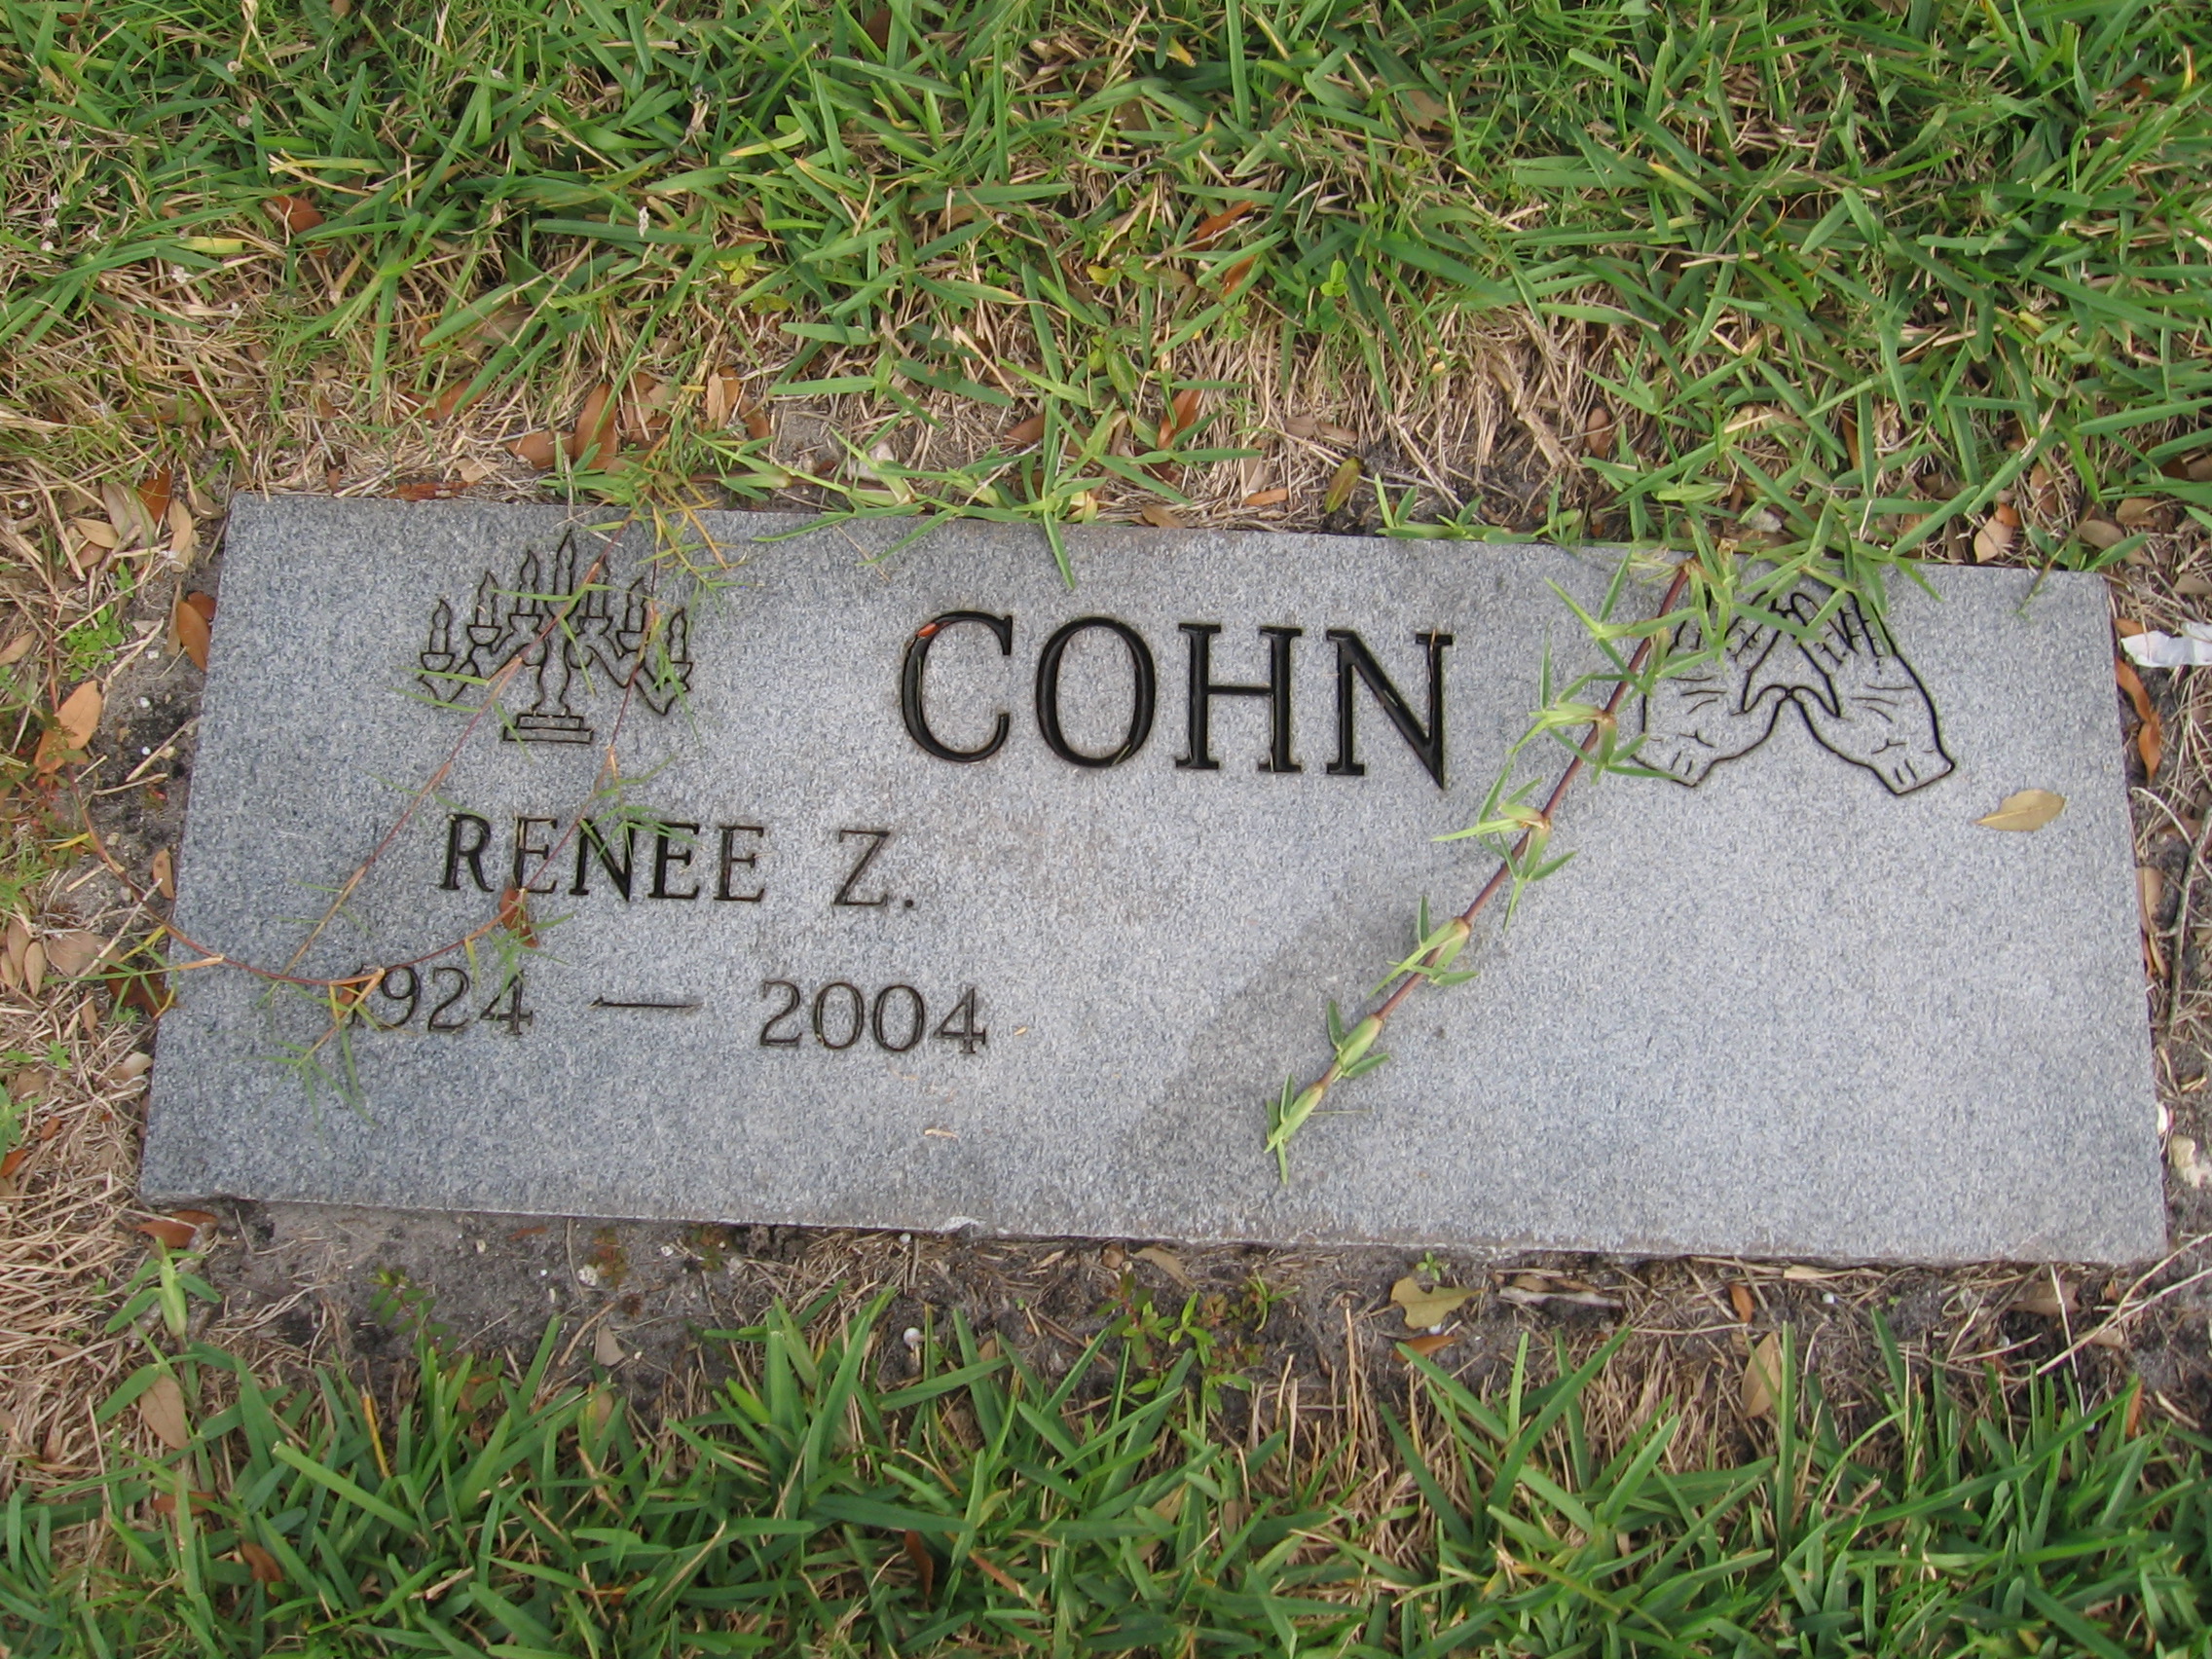 Renee Z Cohn